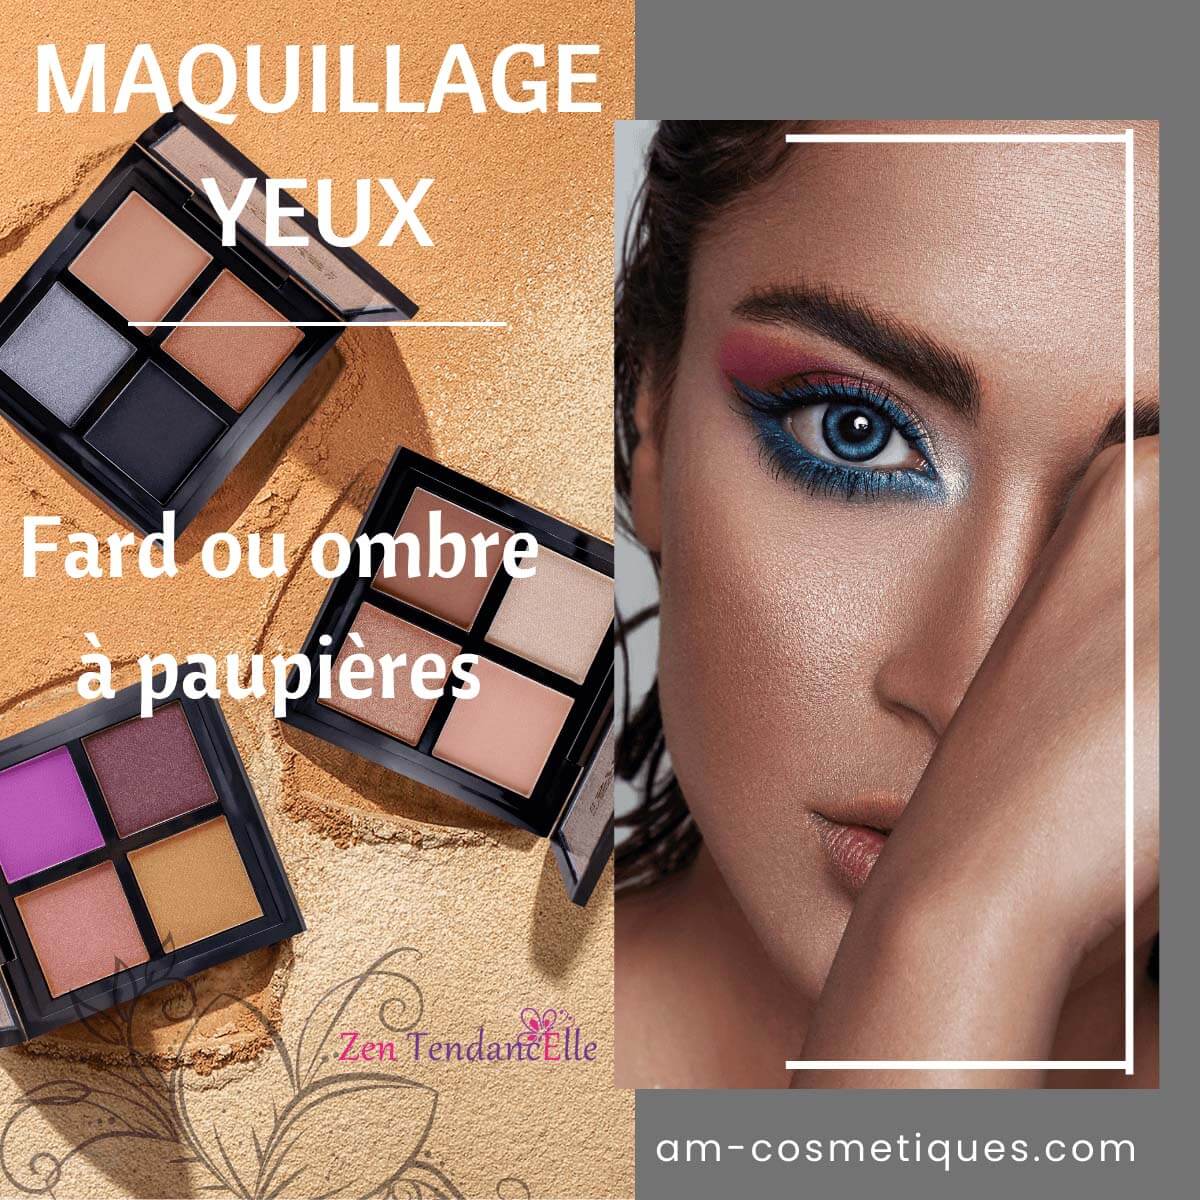 Fard_ou_ombre_a_paupieres_pas_cher_makeup_Yeux_AM-Cosmetiques.jpg